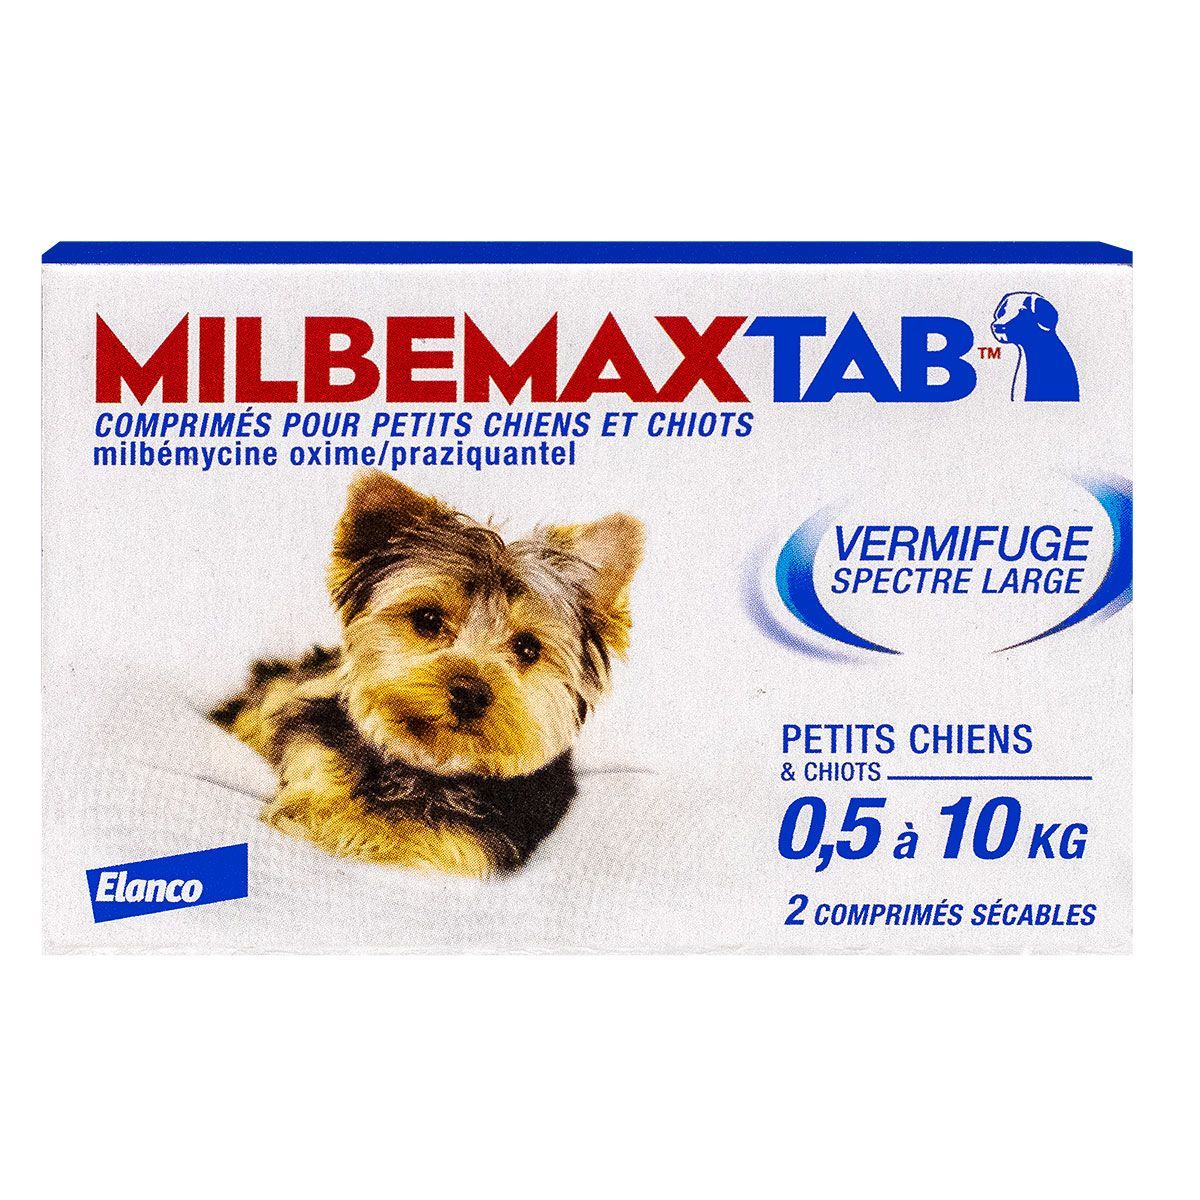 milbemaxtab petit chien 0,5 à 10kg vermifuge en cas de vers